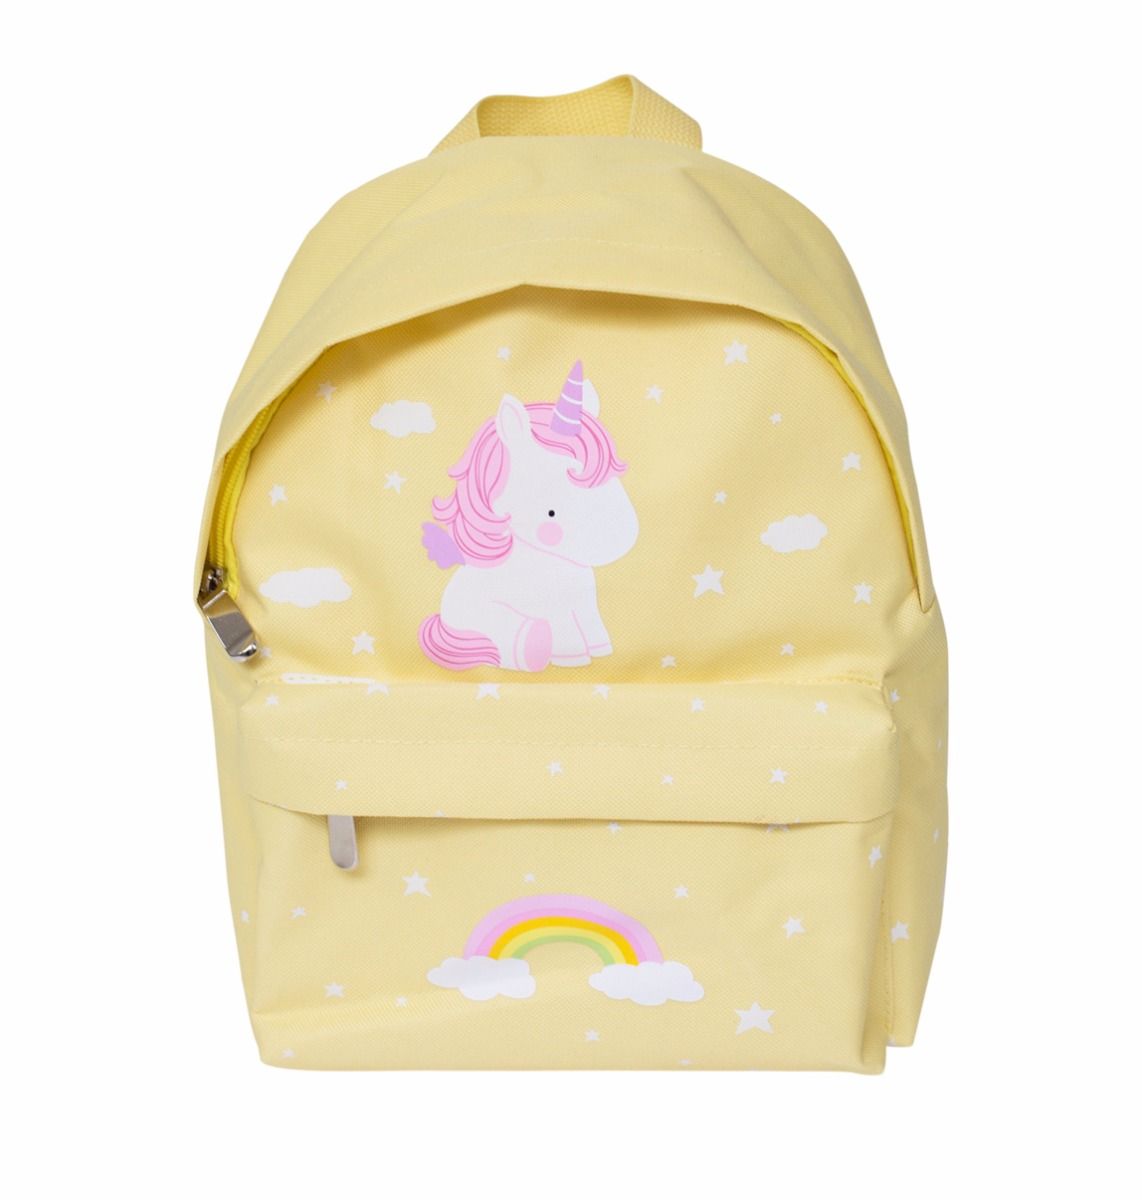 Little backpack: Unicorn